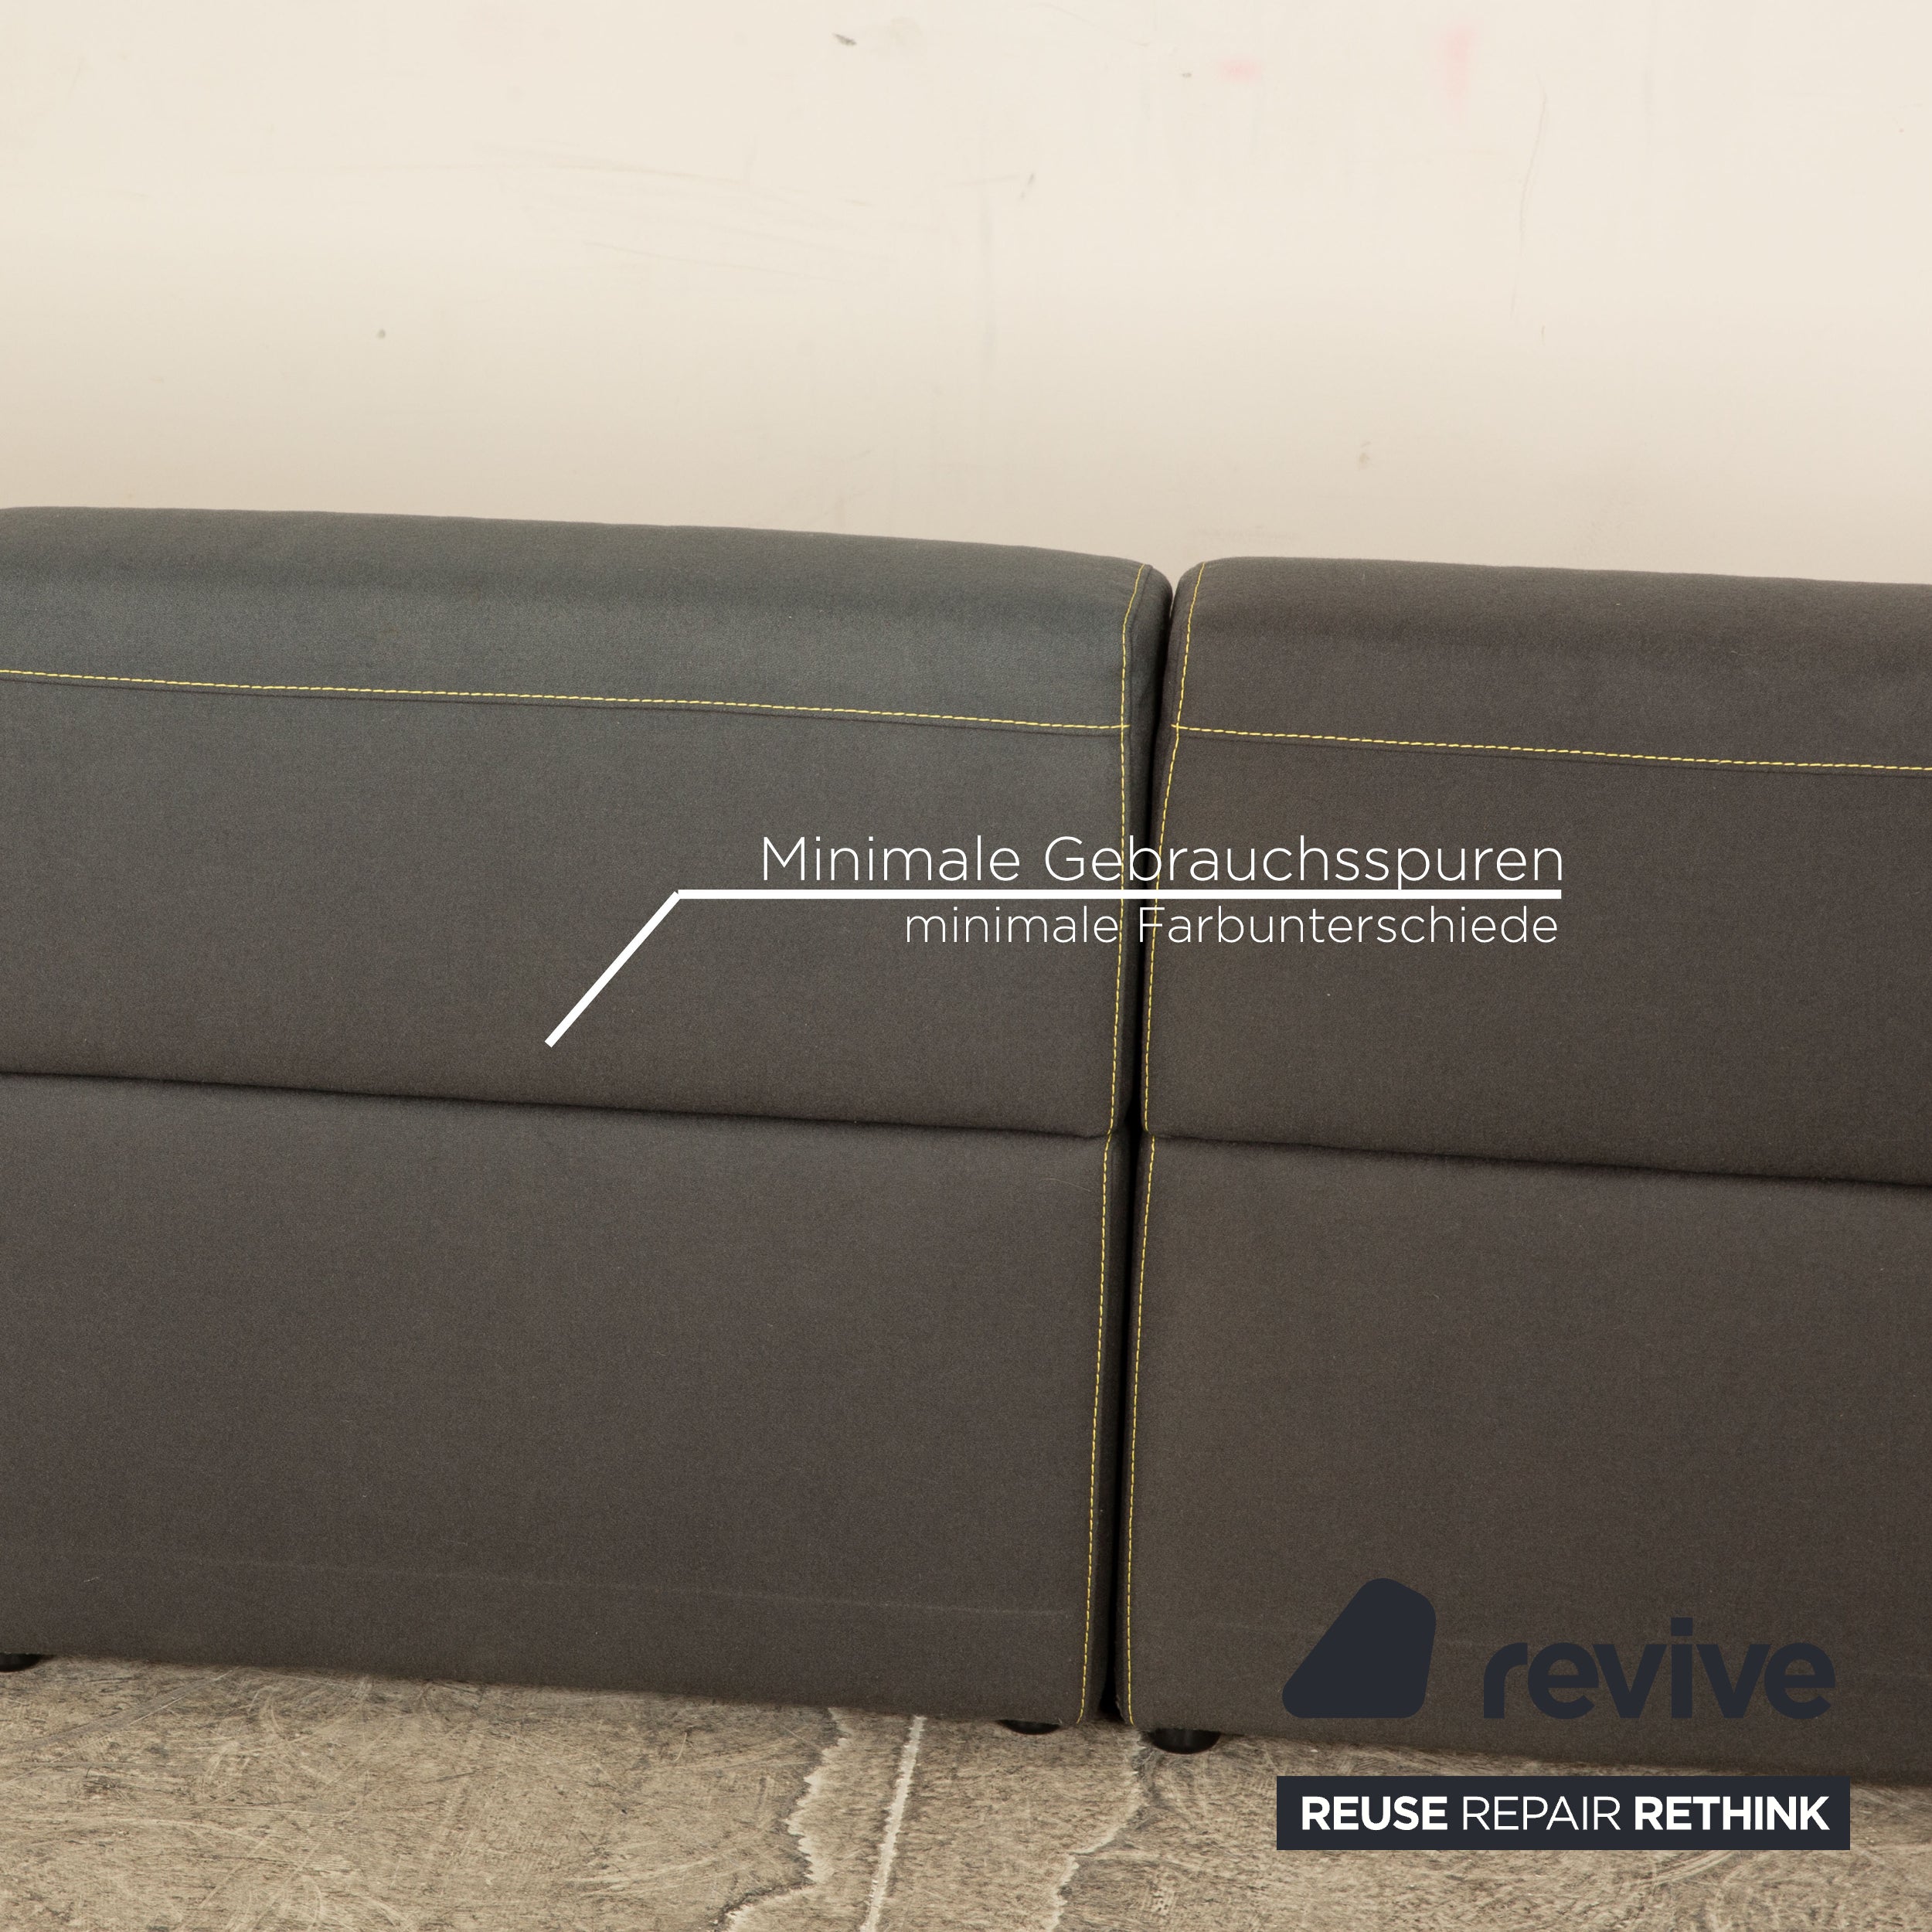 BoConcept Smartville Stoff Dreisitzer Grau Sofa Couch